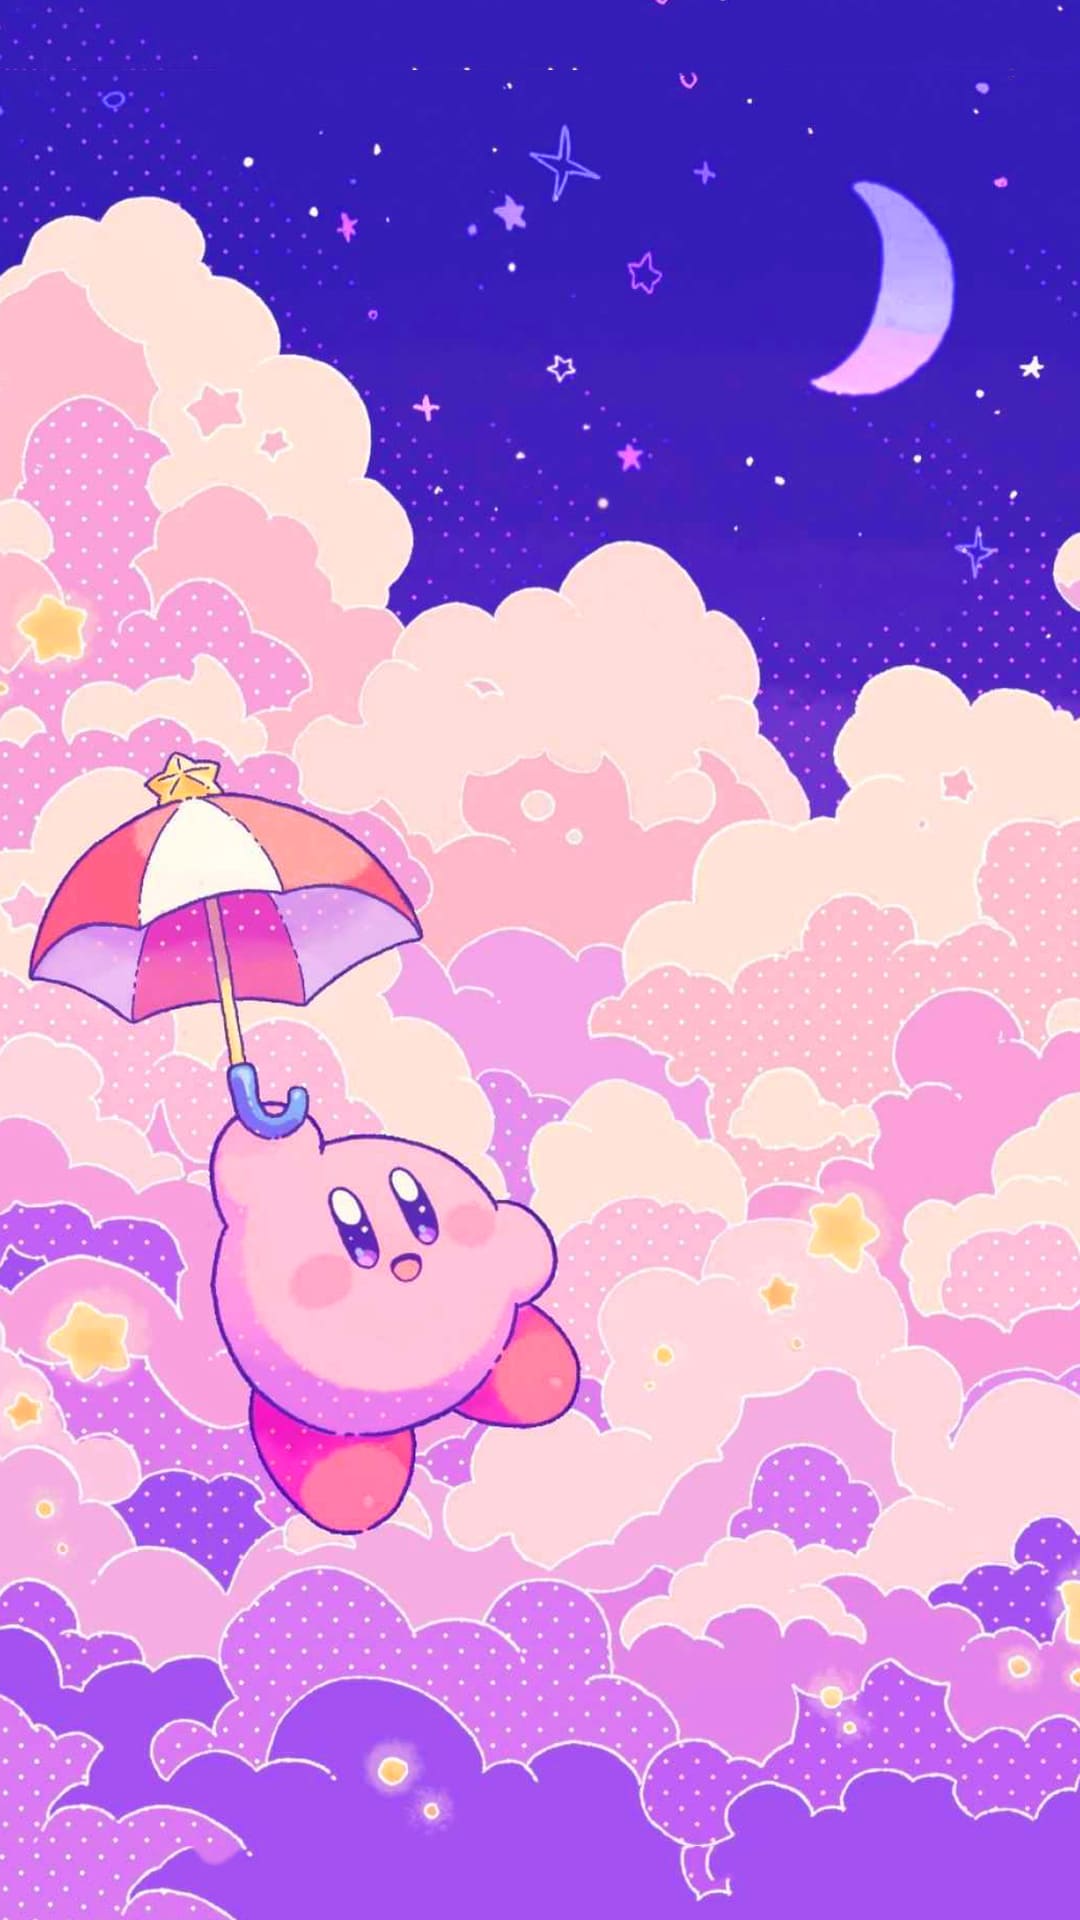 Cùng ngắm nhìn những hình nền đẹp lung linh về Kirby thần kỳ nhé! Kirby với hình dáng tròn xoe đáng yêu và những màu sắc tươi sáng đã tạo nên những thiết kế nền tuyệt đẹp sẽ khiến bạn muốn chấp nhận mọi thách thức để sở hữu chúng ngay lập tức.